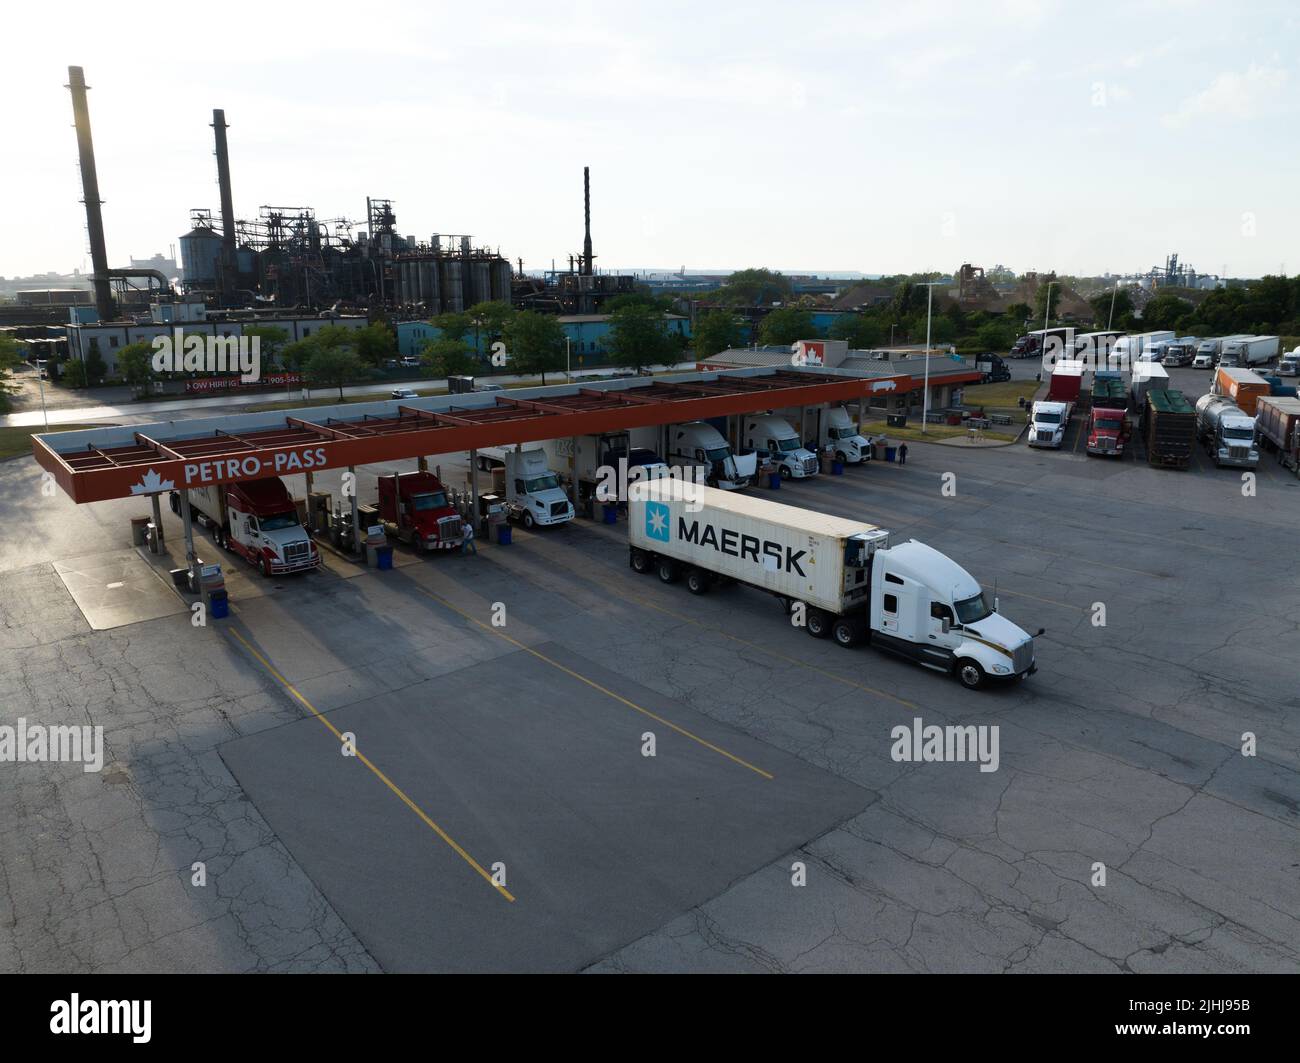 Un contenedor Maersk en un camión de transporte sale de una gran gasolinera en un sector industrial en una tarde soleada. Foto de stock